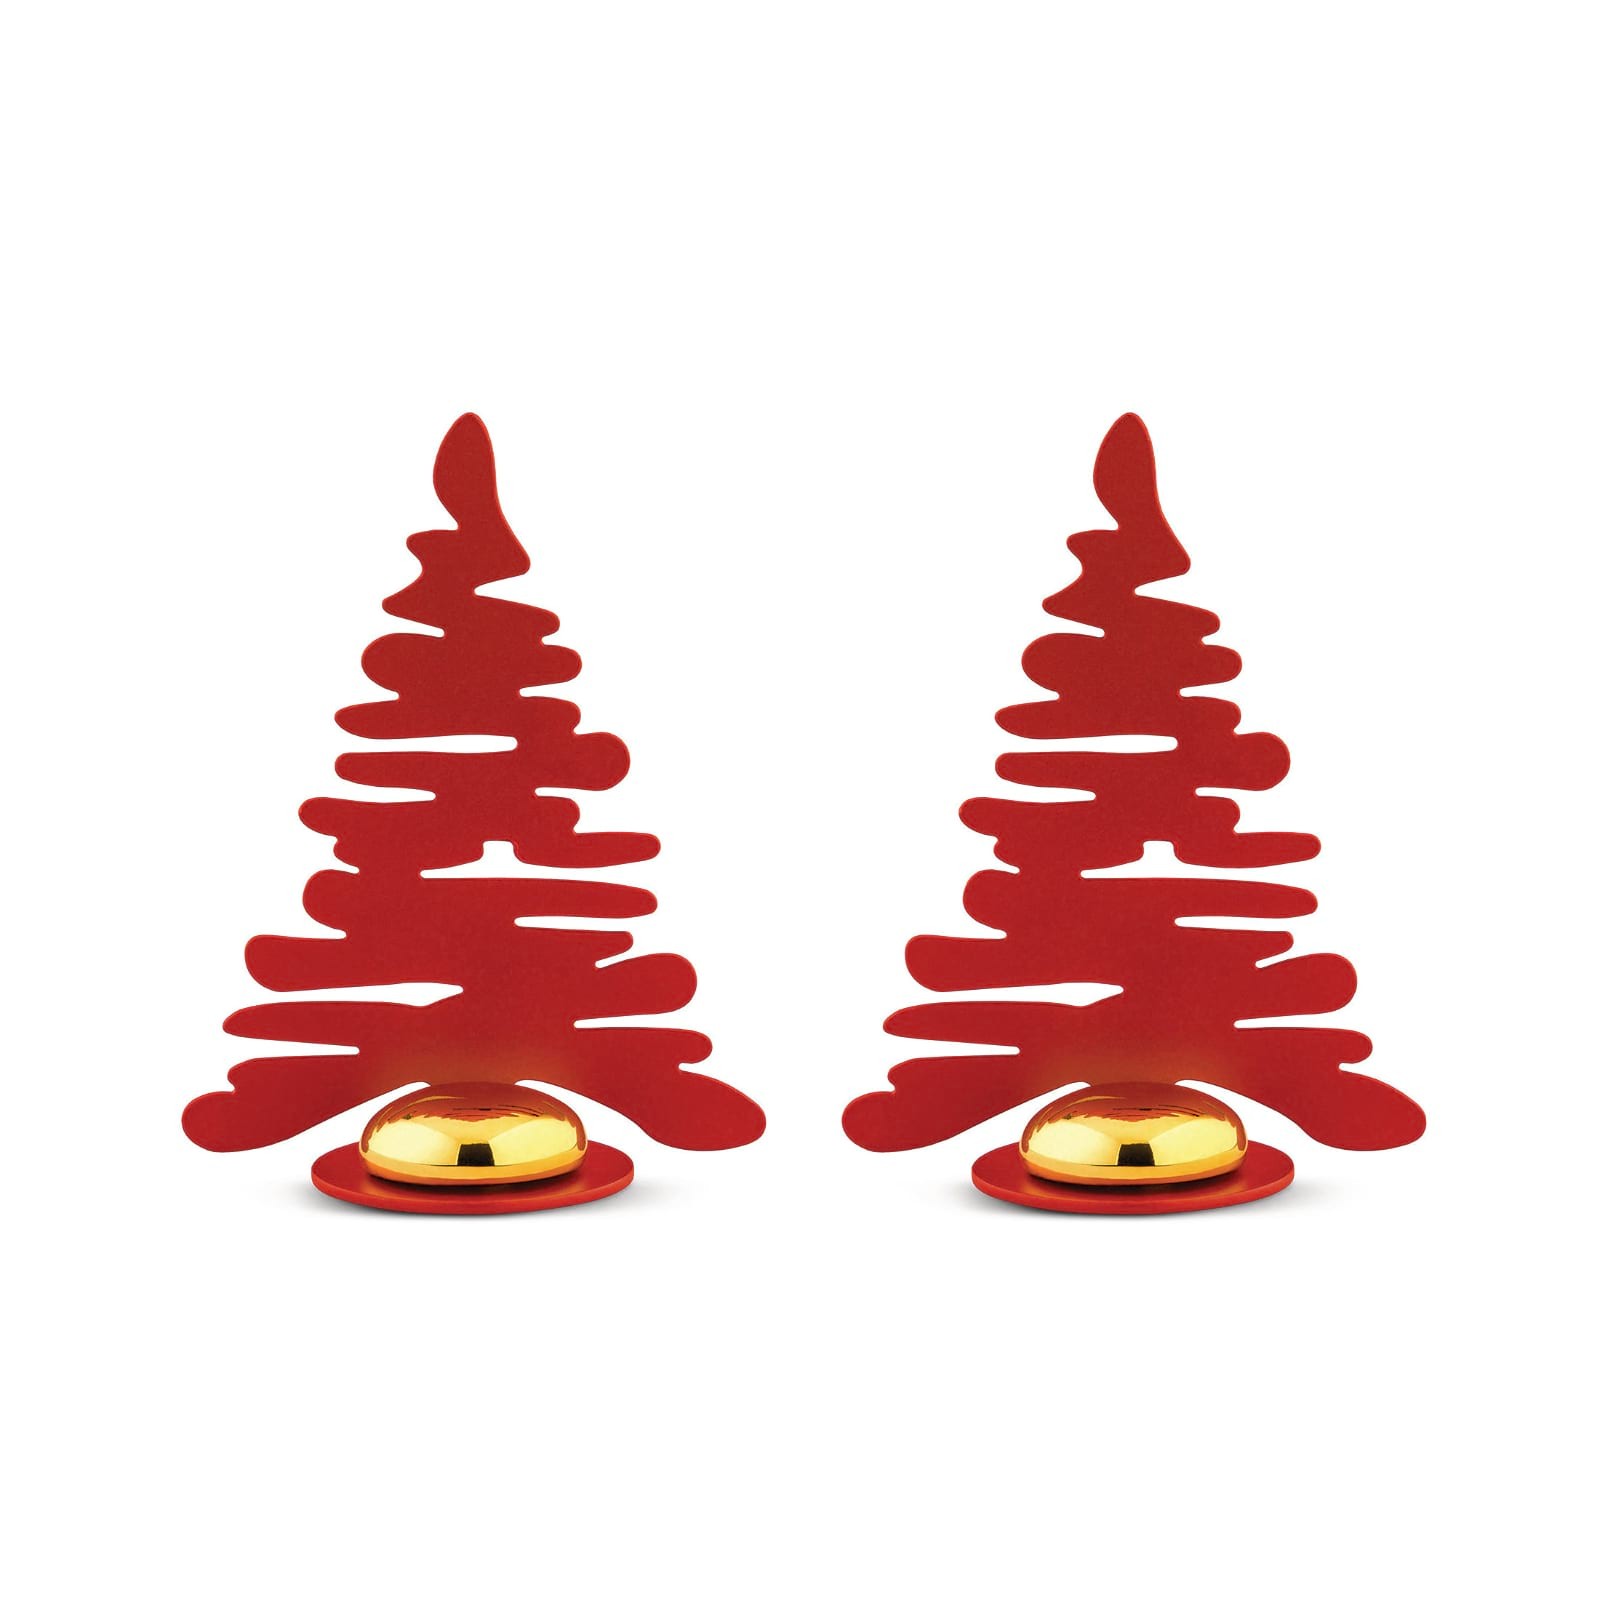 Barkplace Tree Χριστουγεννιάτικο Δέντρο Στολίδι Σετ των 2 (Κόκκινο / Χρυσό) - Alessi